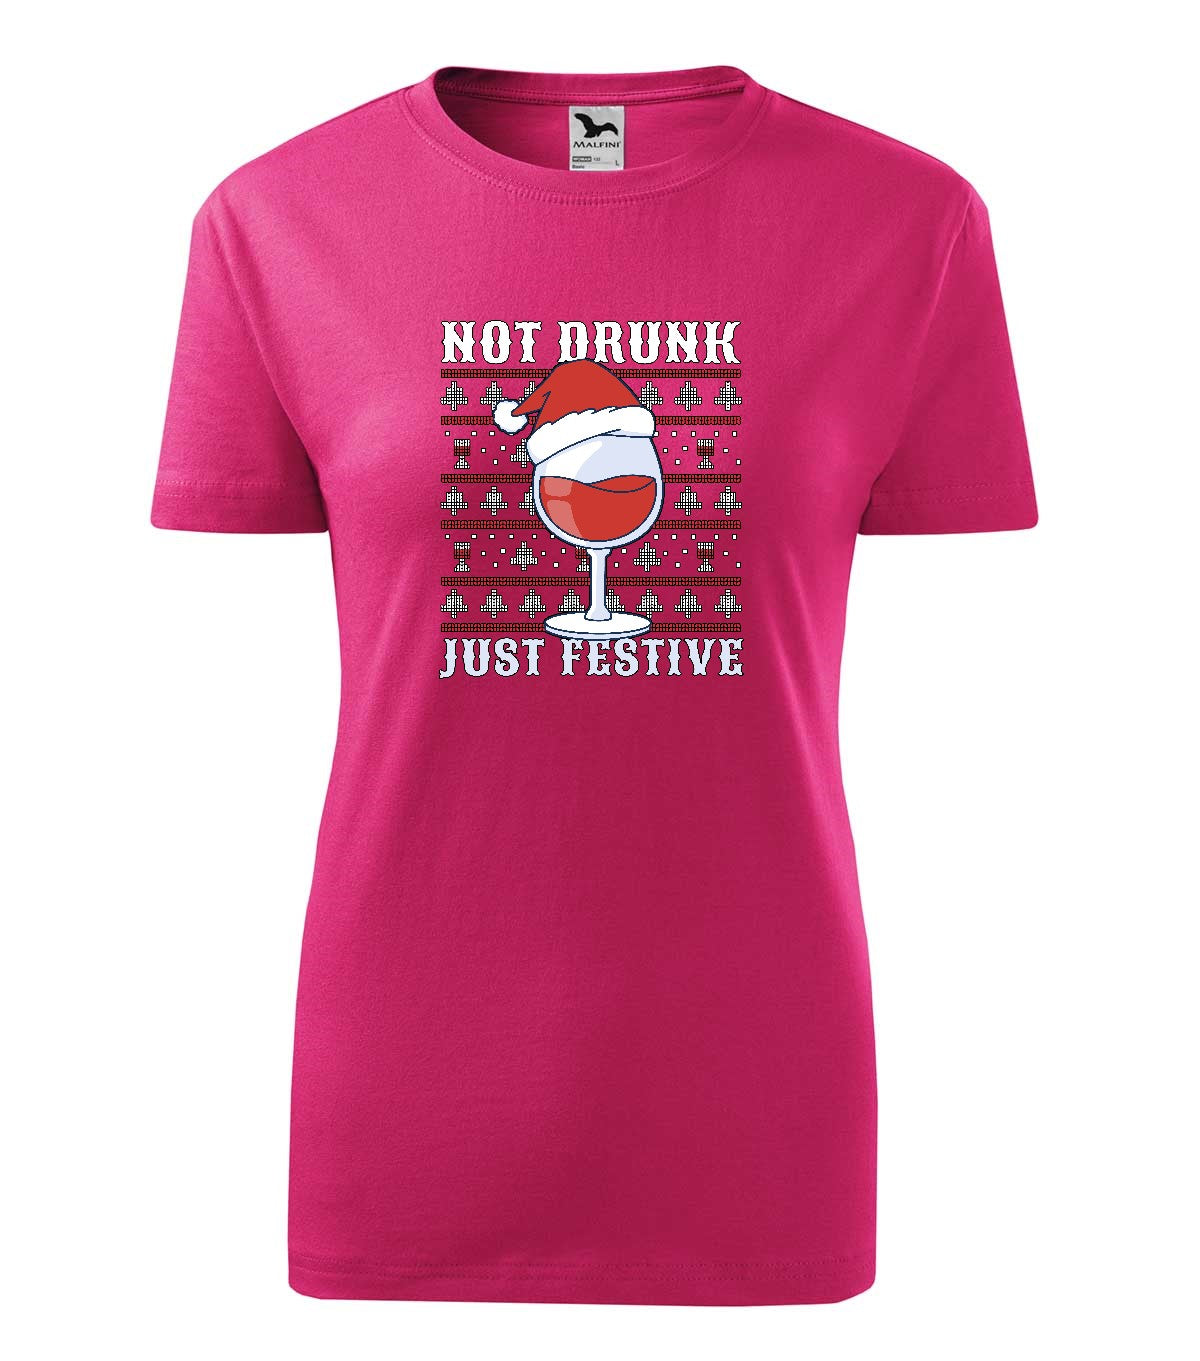 Not Drunk női technikai póló